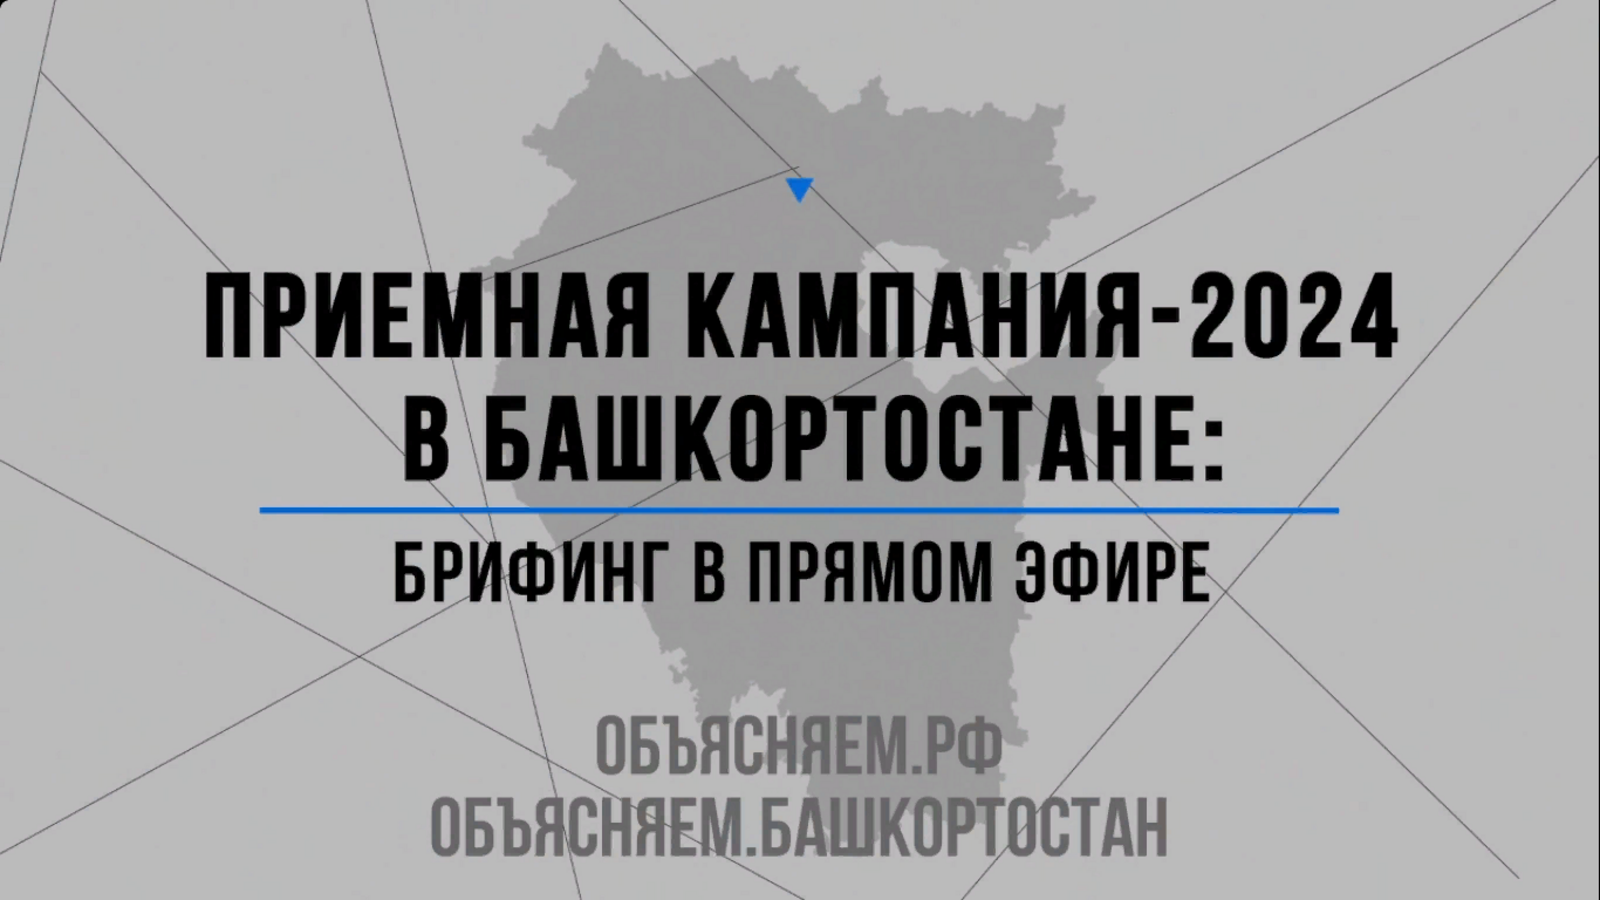 Смотрите брифинг в прямом эфире о приёмной кампании-2024 в Башкирии